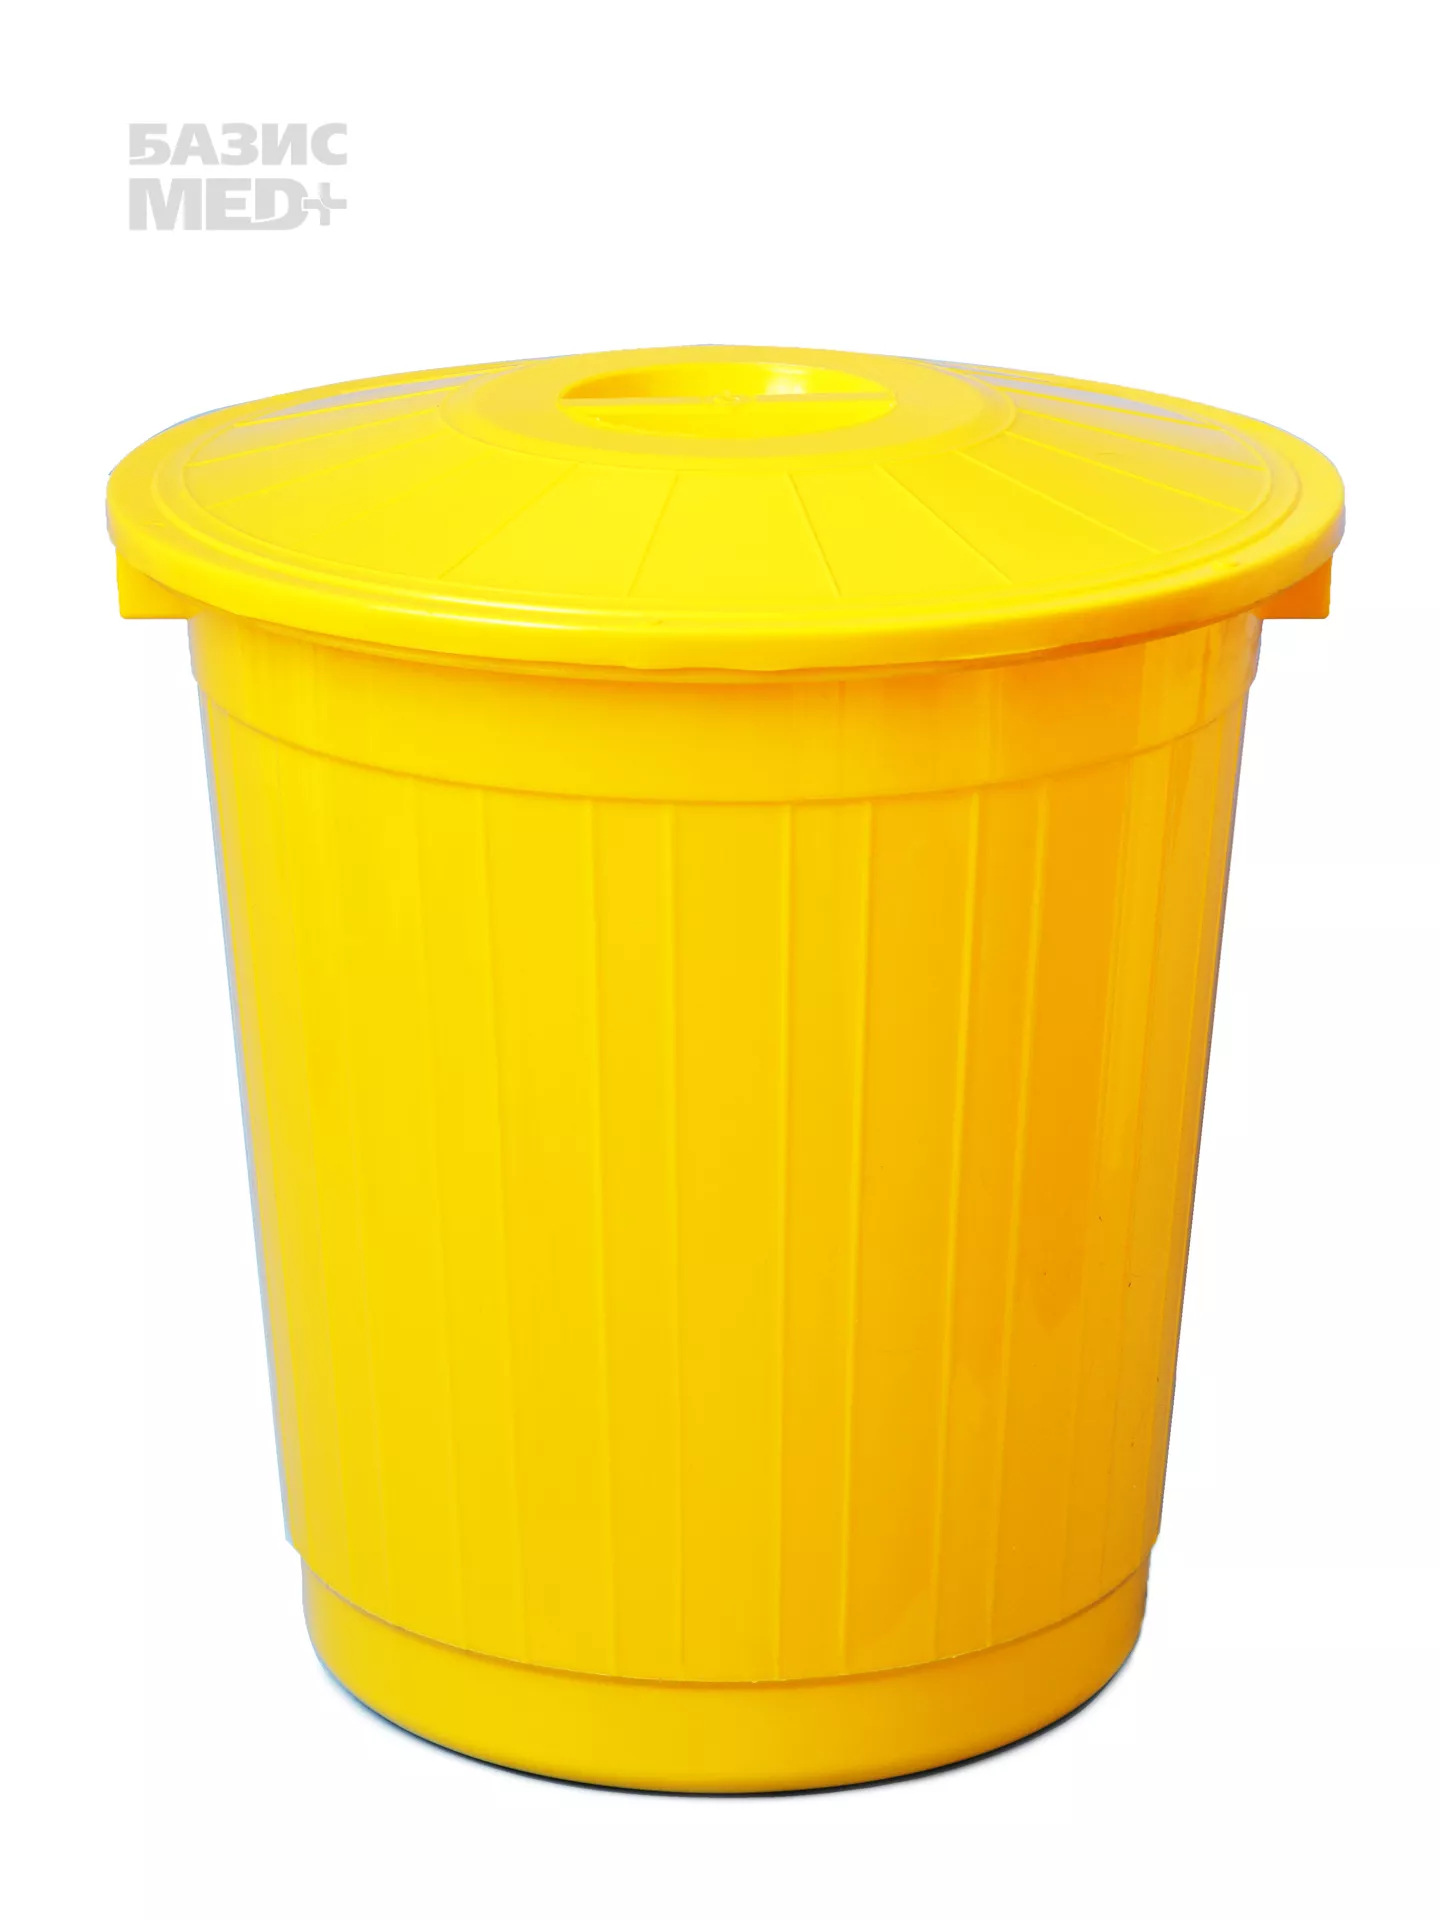 Бак 80,0л для сбора, хранения медицинских отходов (класс Б), с крышкой, цвет желтый, многоразовый